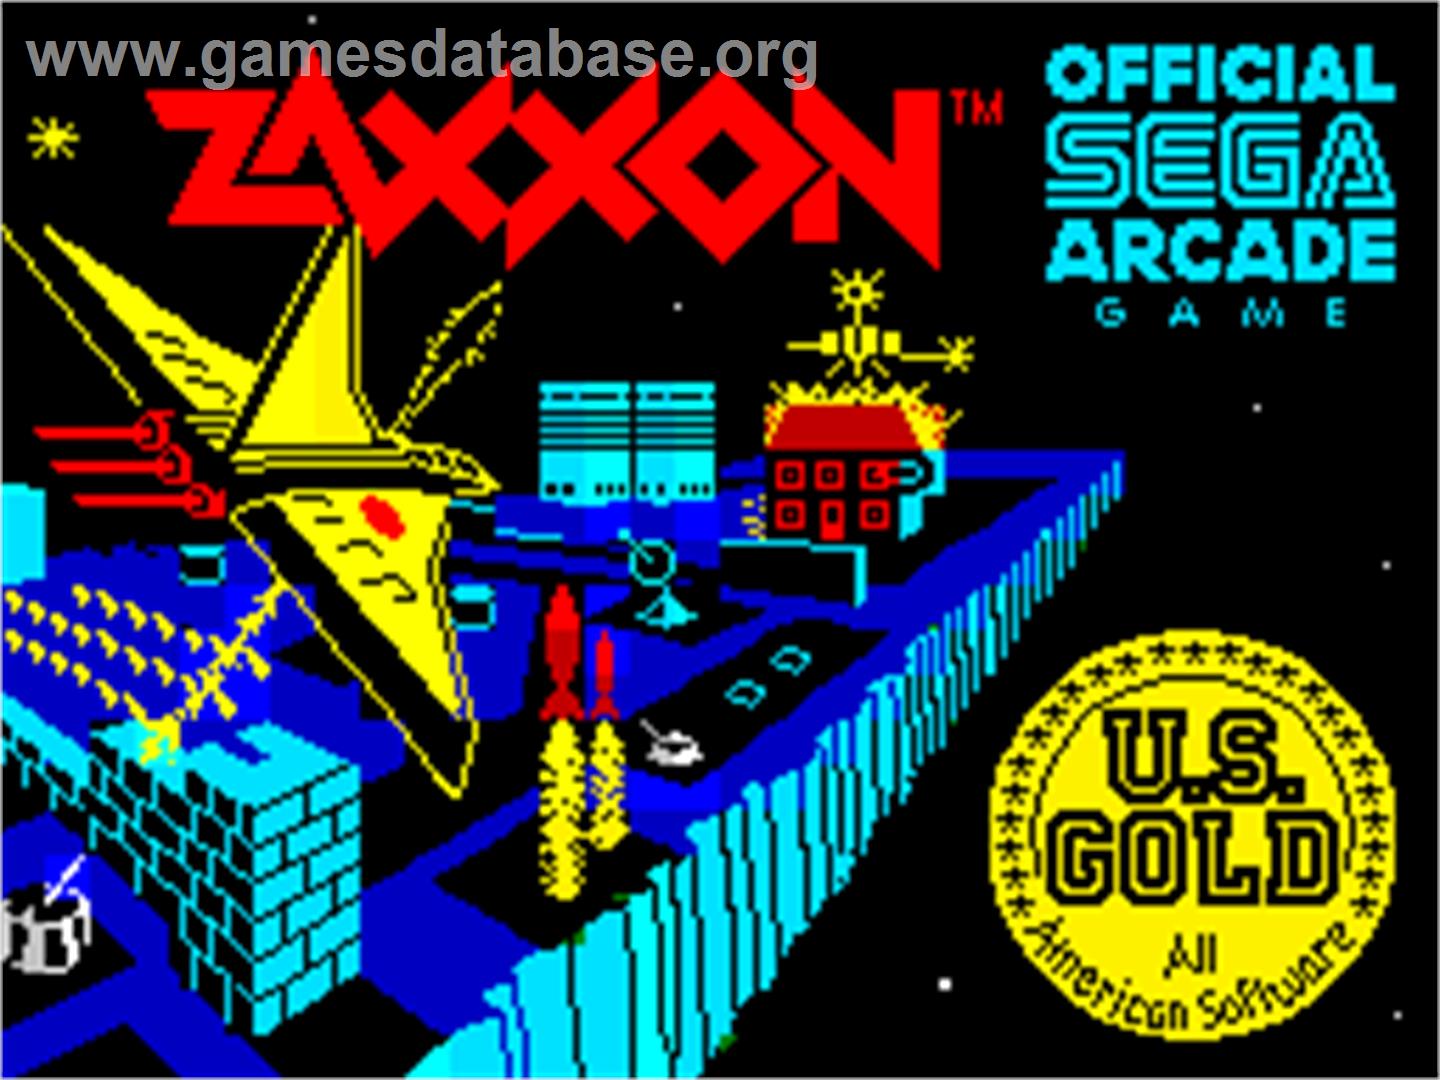 Zaxxon - Sinclair ZX Spectrum - Artwork - Title Screen